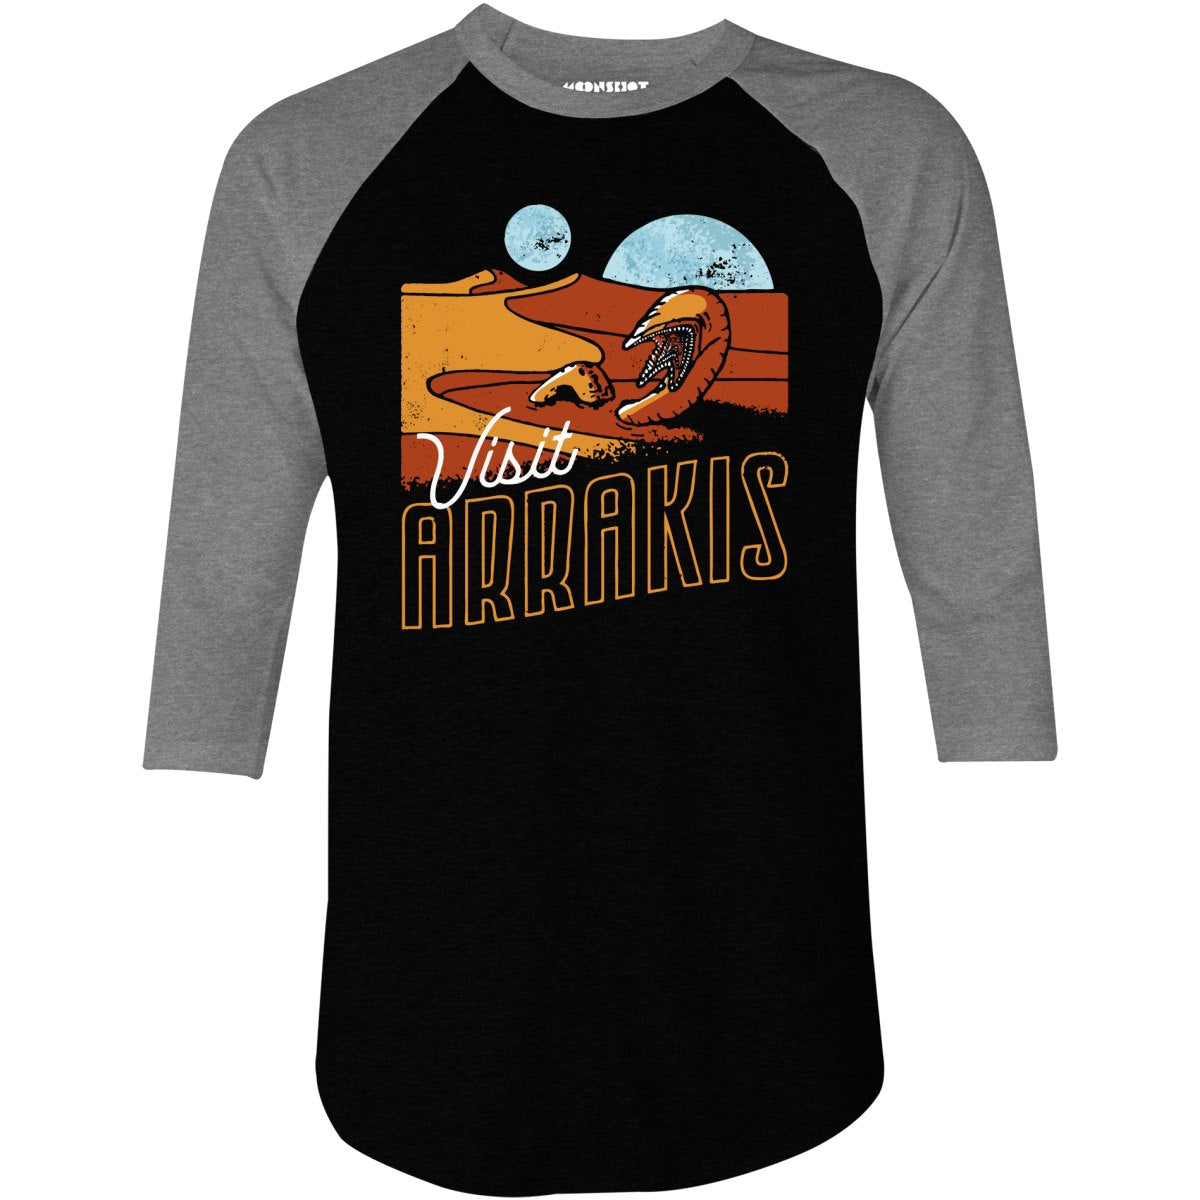 Visit Arrakis - Dune - 3/4 Sleeve Raglan T-Shirt